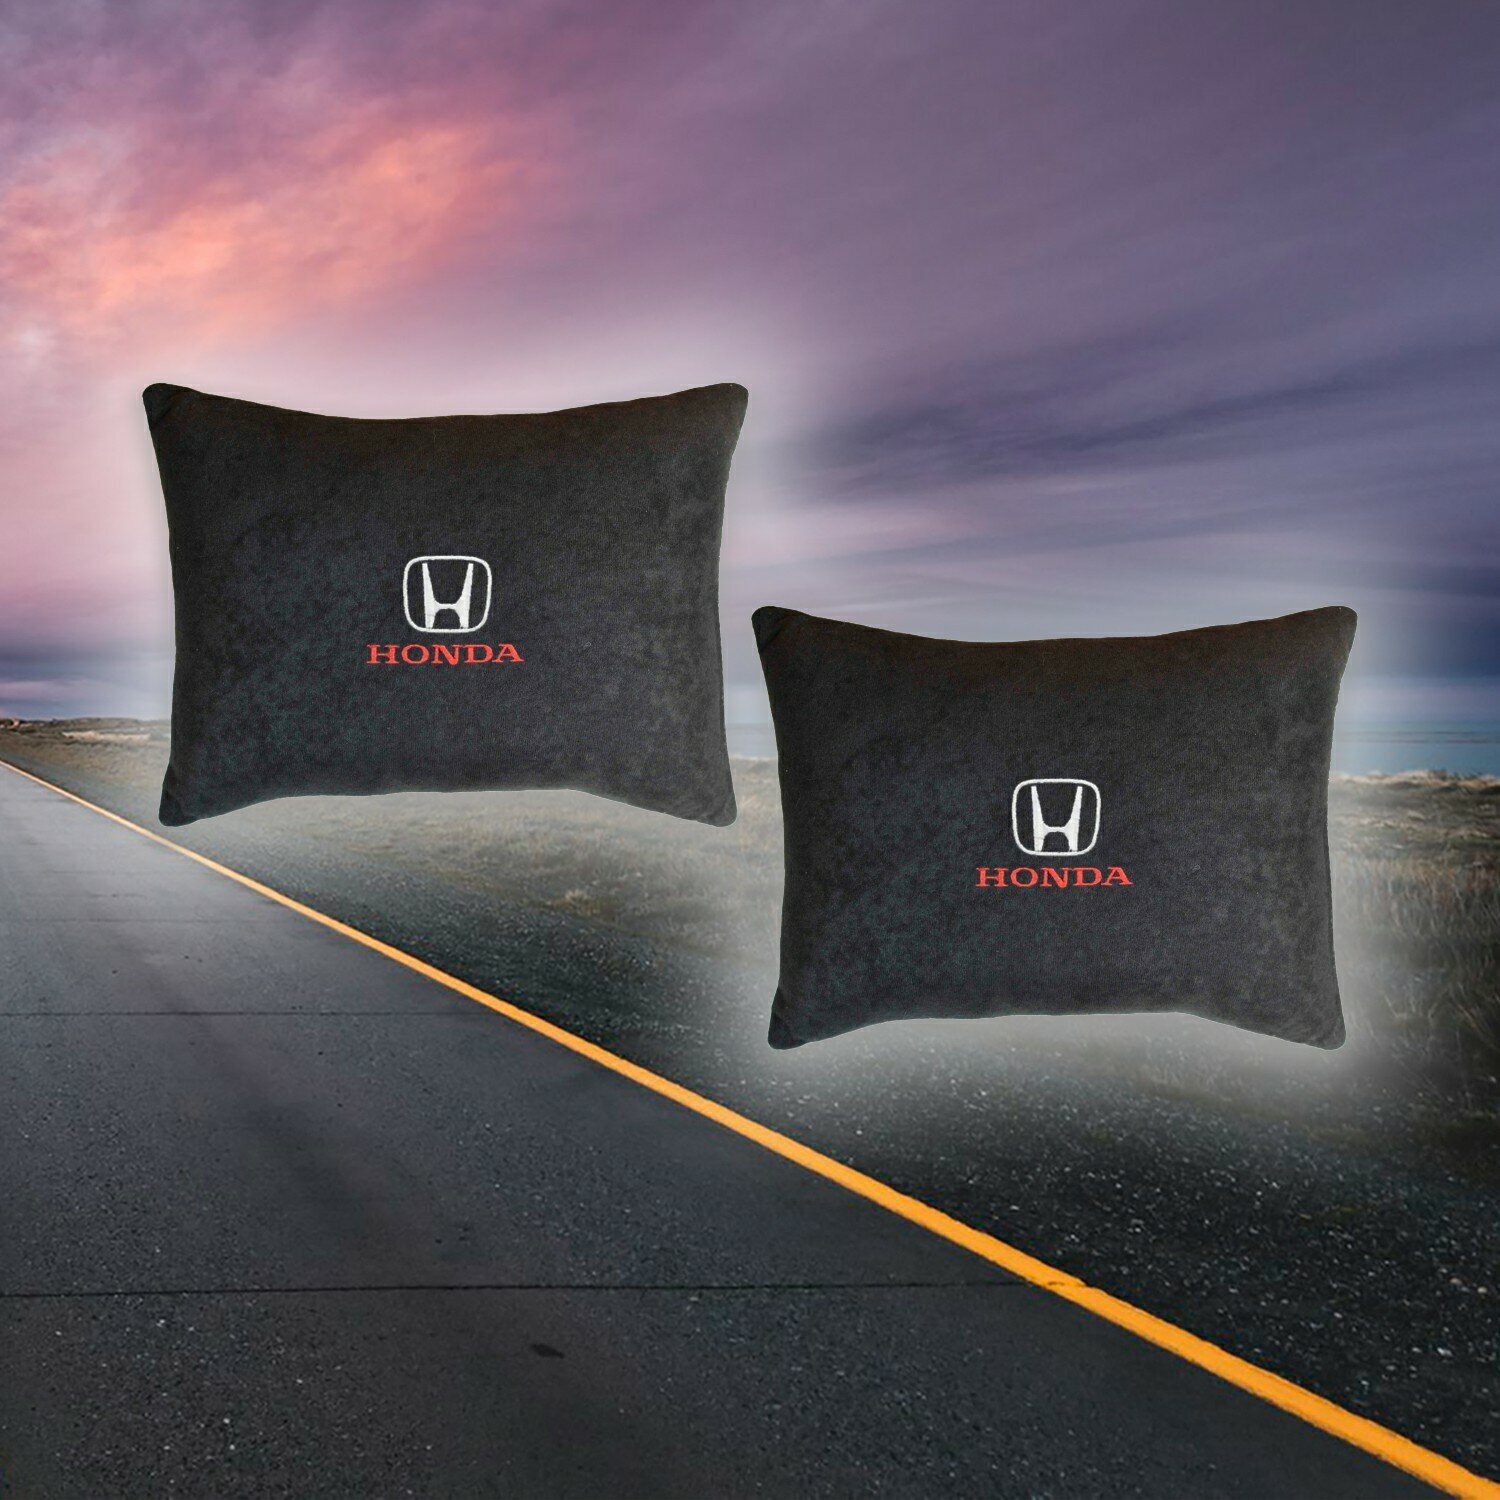 Автомобильная подушка на сиденье из велюра черная с вышивкой для Honda 2 штуки